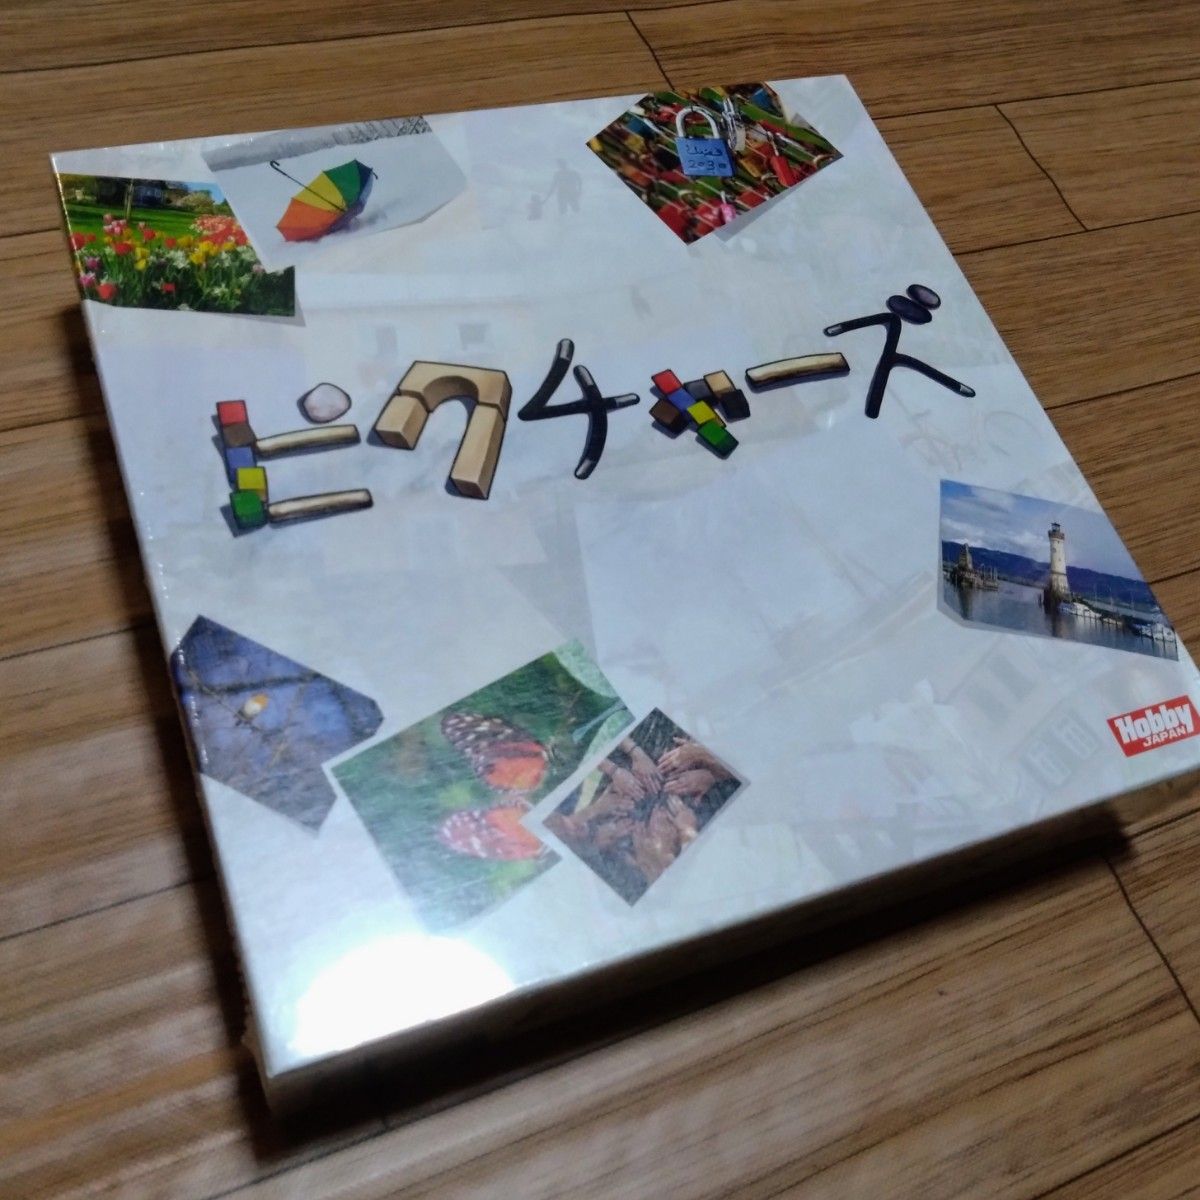 『ピクチャーズ』『ディクシット:ディズニーエディション』ボードゲーム 日本語版 ディズニー